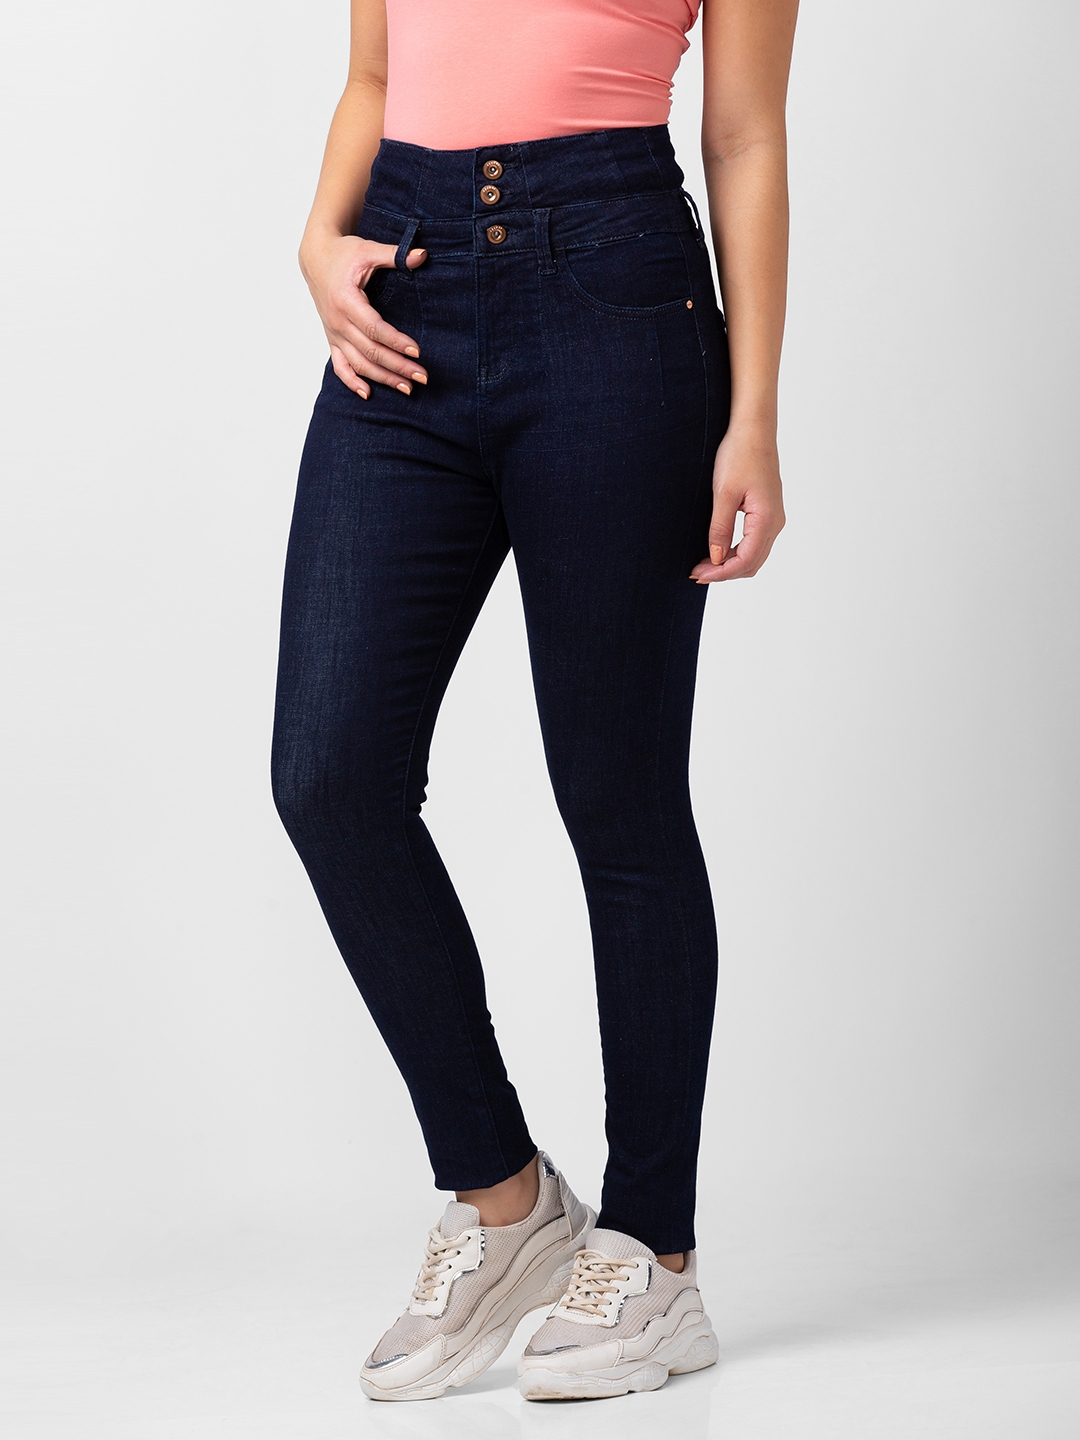 spykar | Women's Blue Lycra Solid Jeans 3